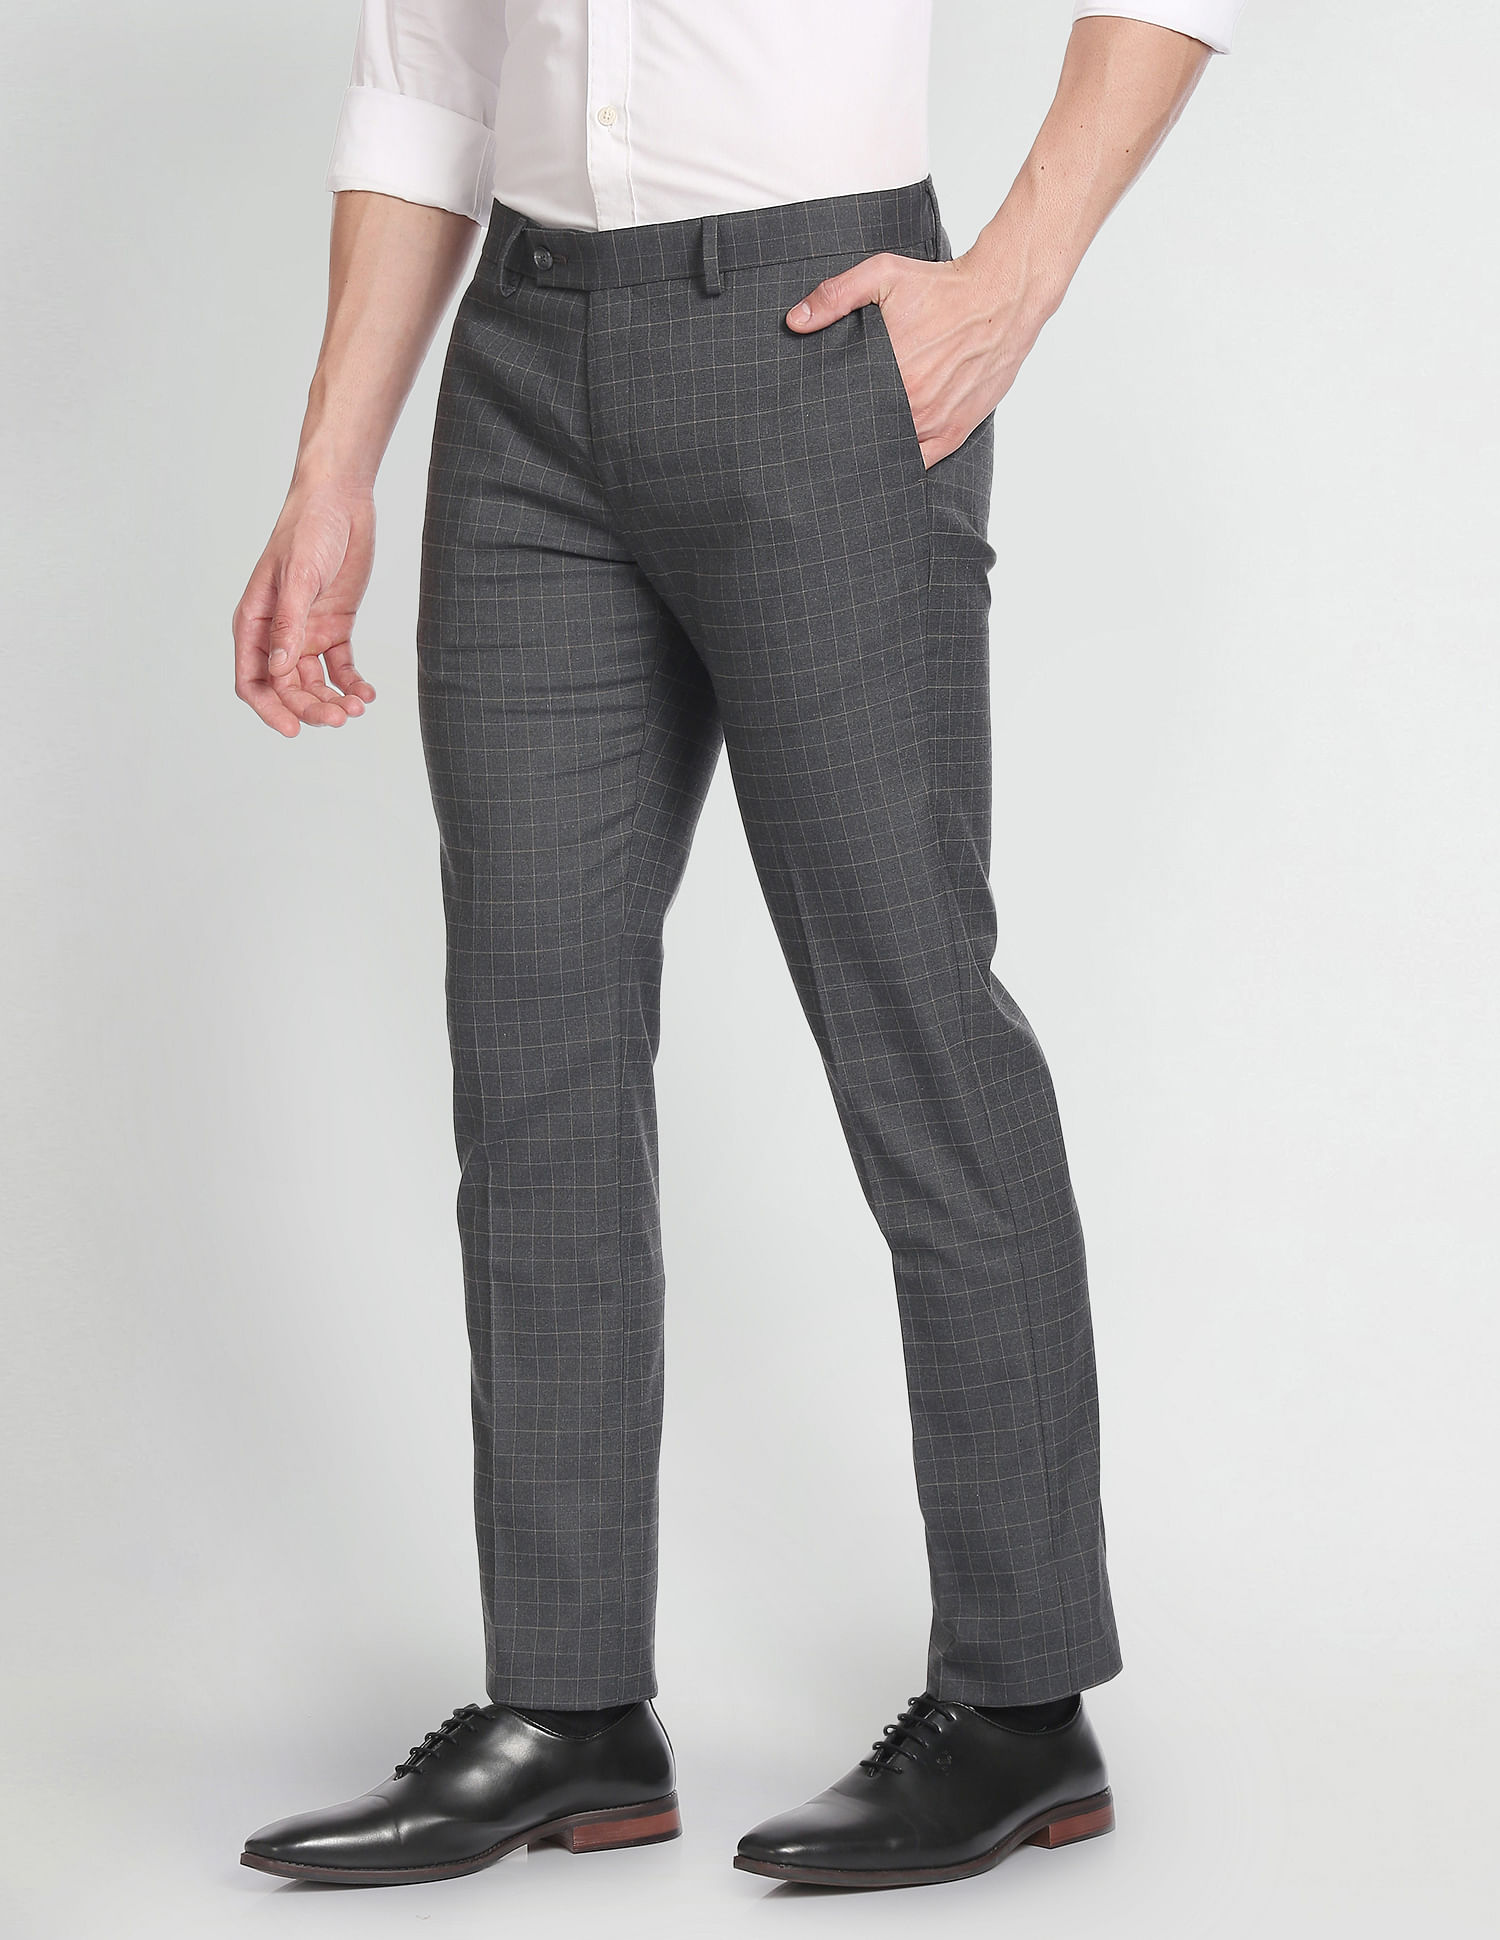 Pantaloons Grey Trousers - Selling Fast at Pantaloons.com